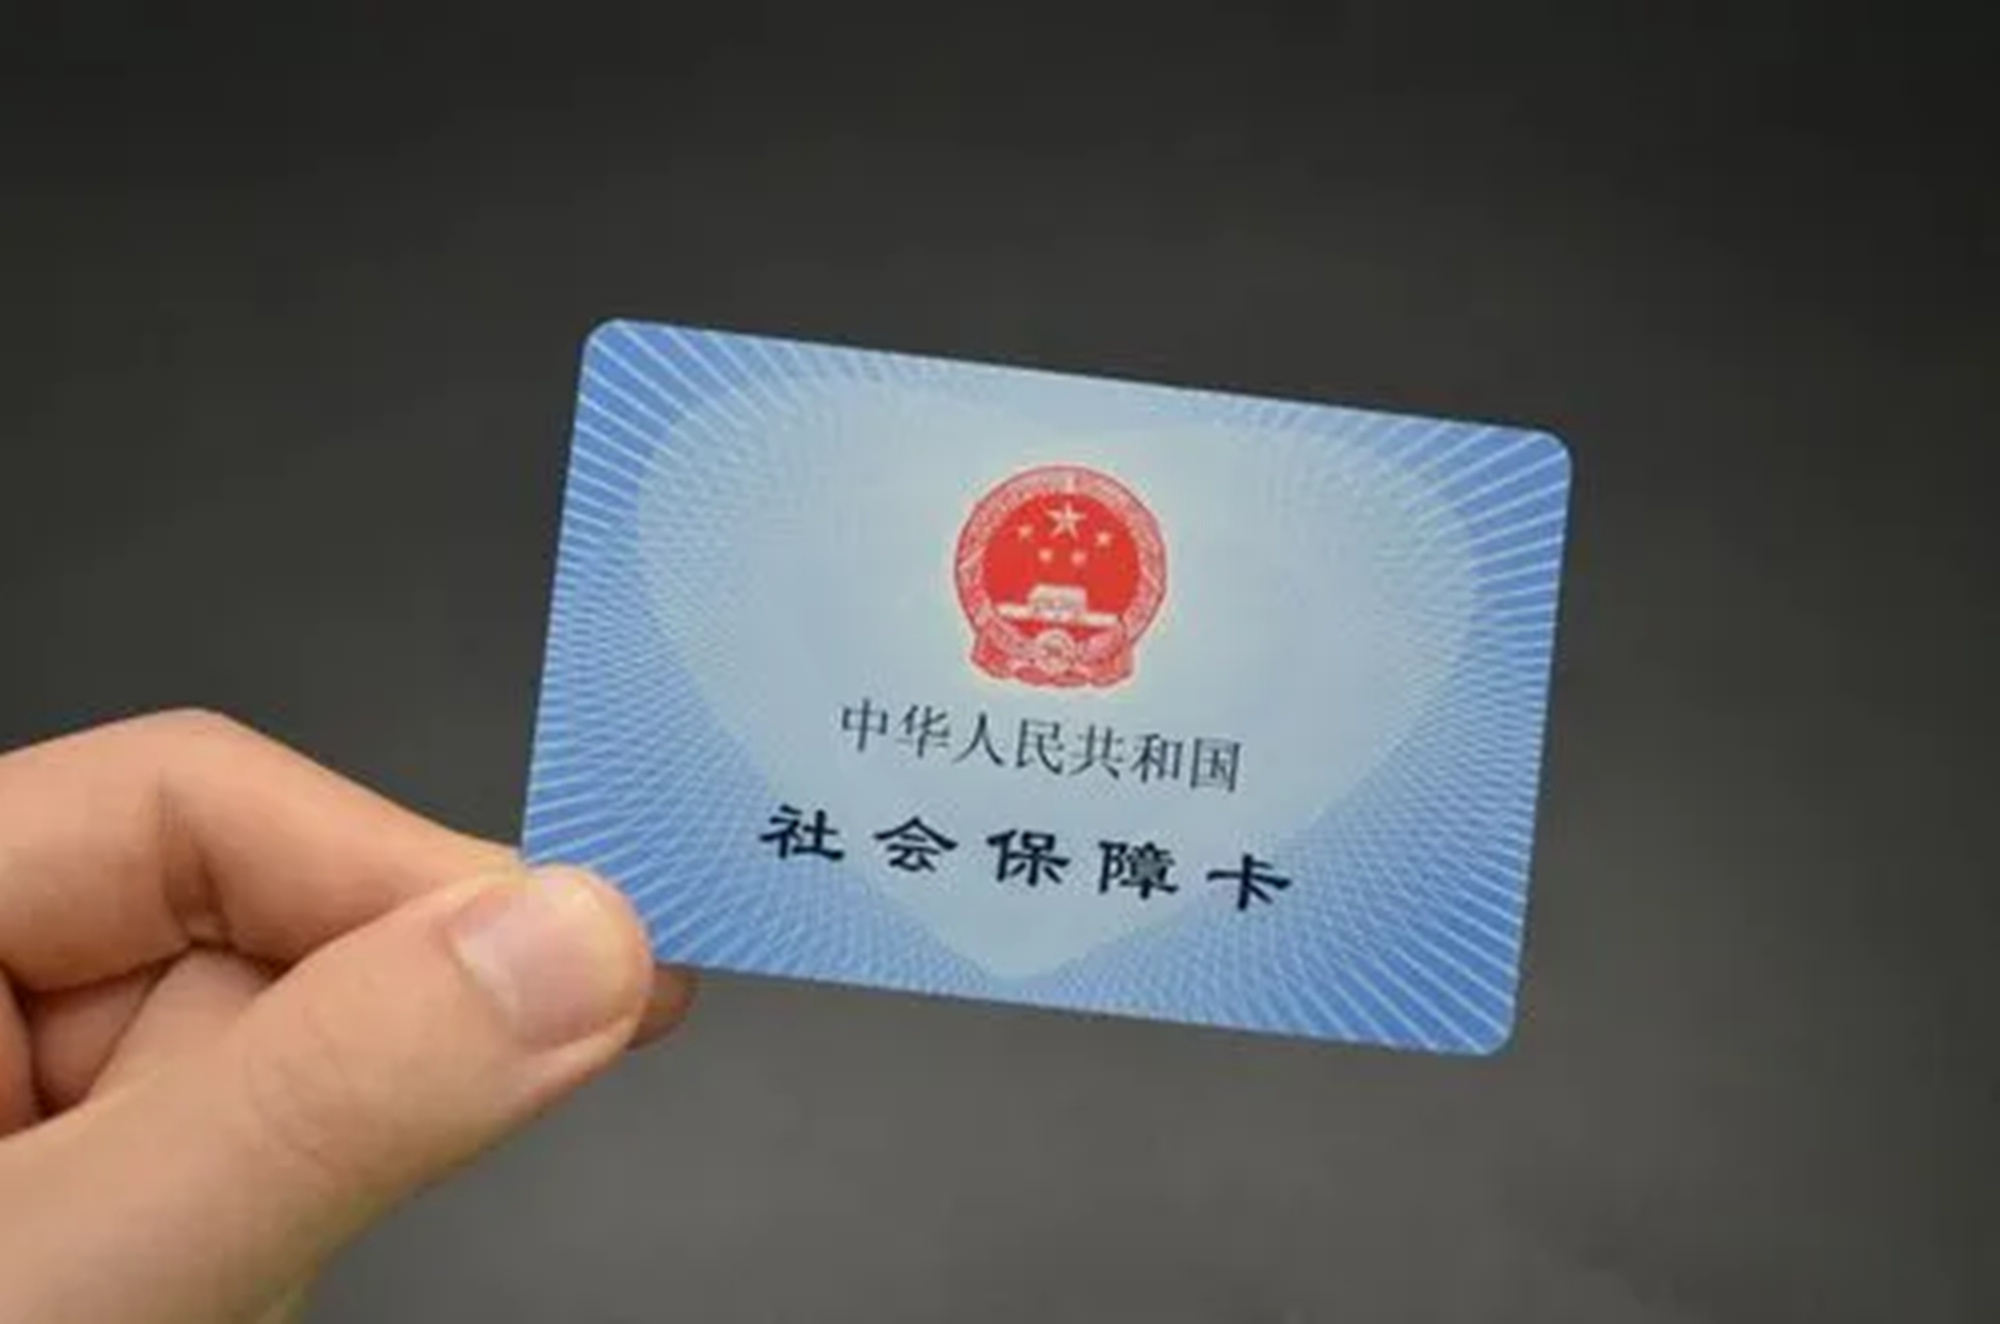 北京第二代社保卡图片图片